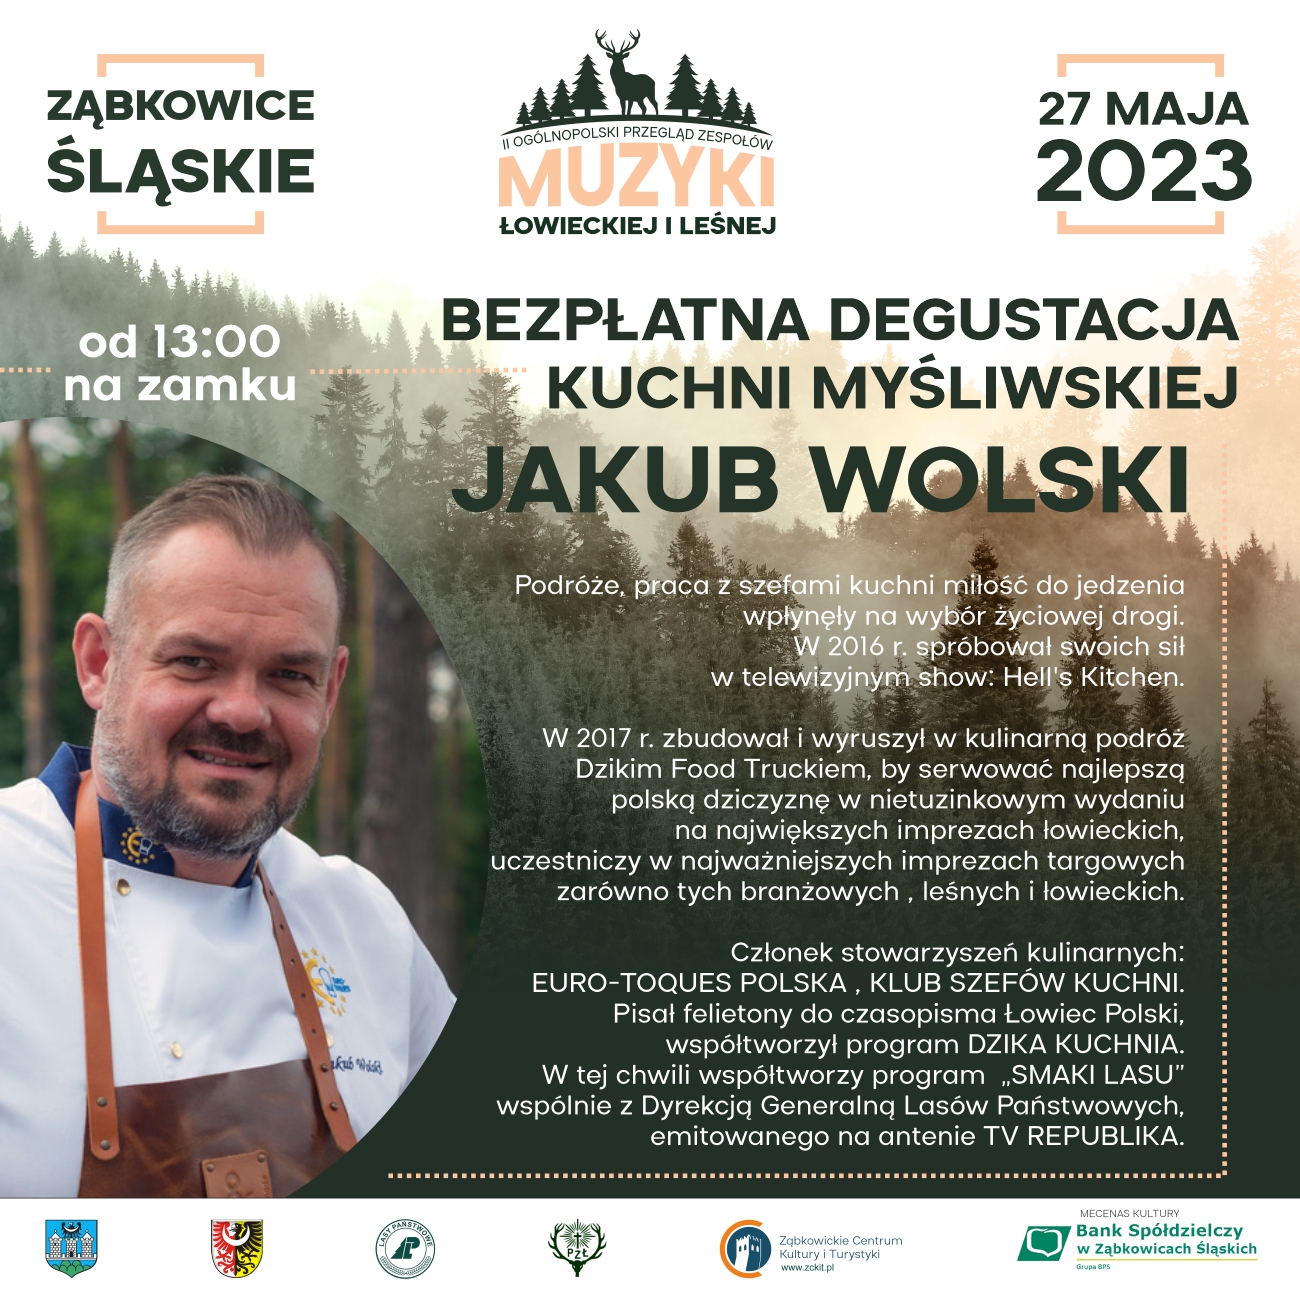 Plakat informujący o bezpłatnej degustacji kuchni myśliwskiej Jakuba Wolskiego 27 maja 2023 w Ząbkowicach Śląskich